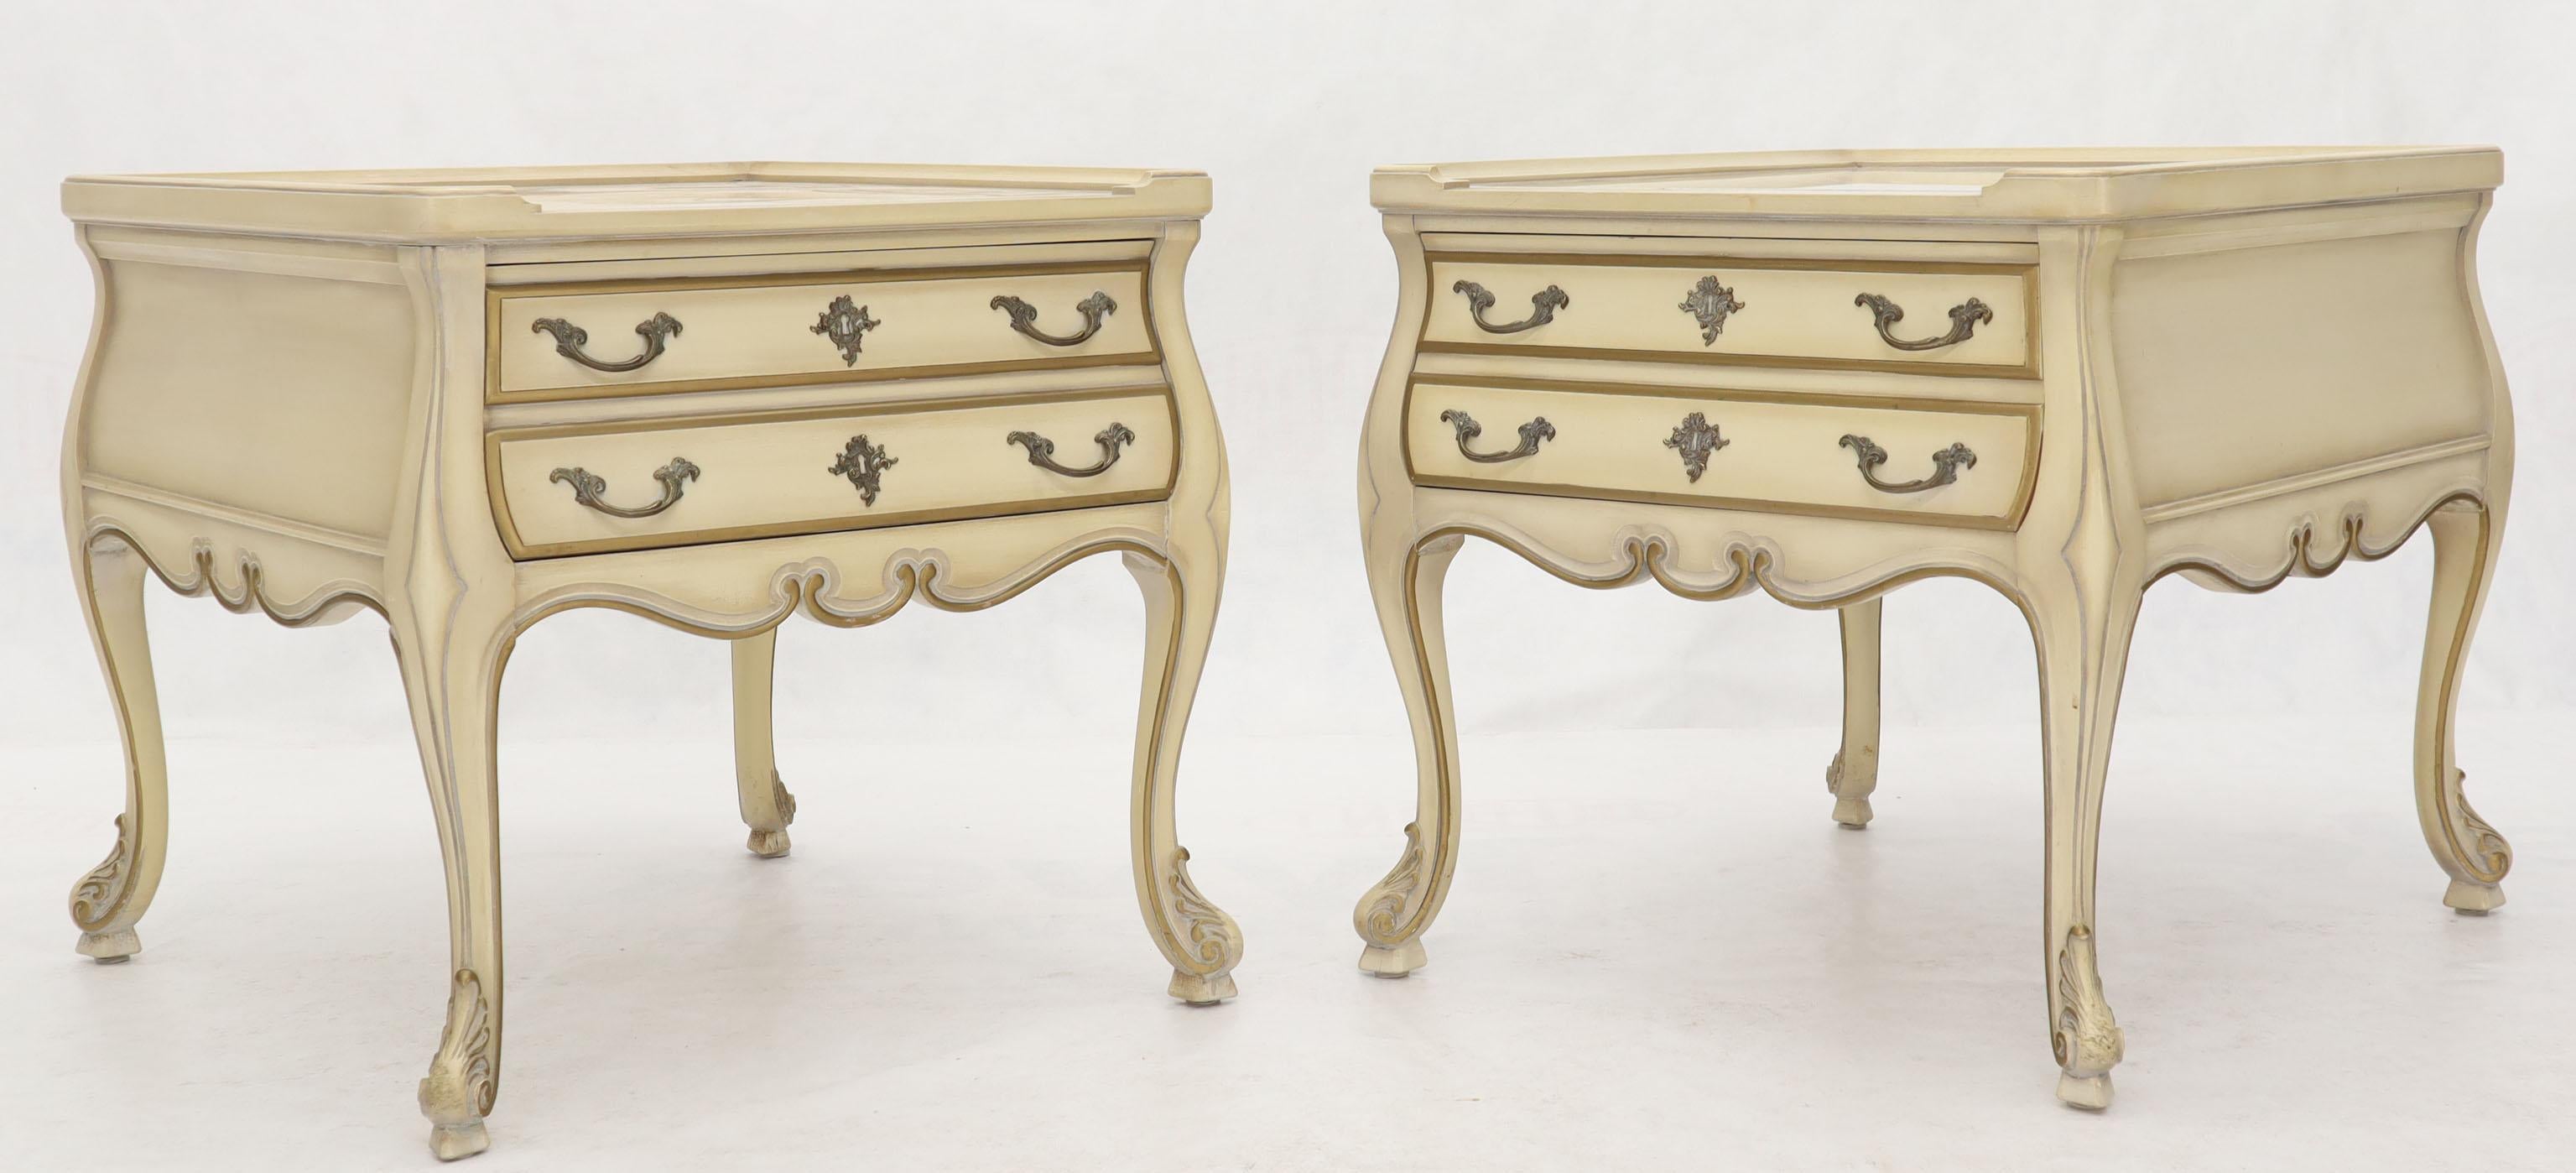 Paire de tables d'appoint Louis XV provincial français Bombay beige et or, avec plateau en marbre.